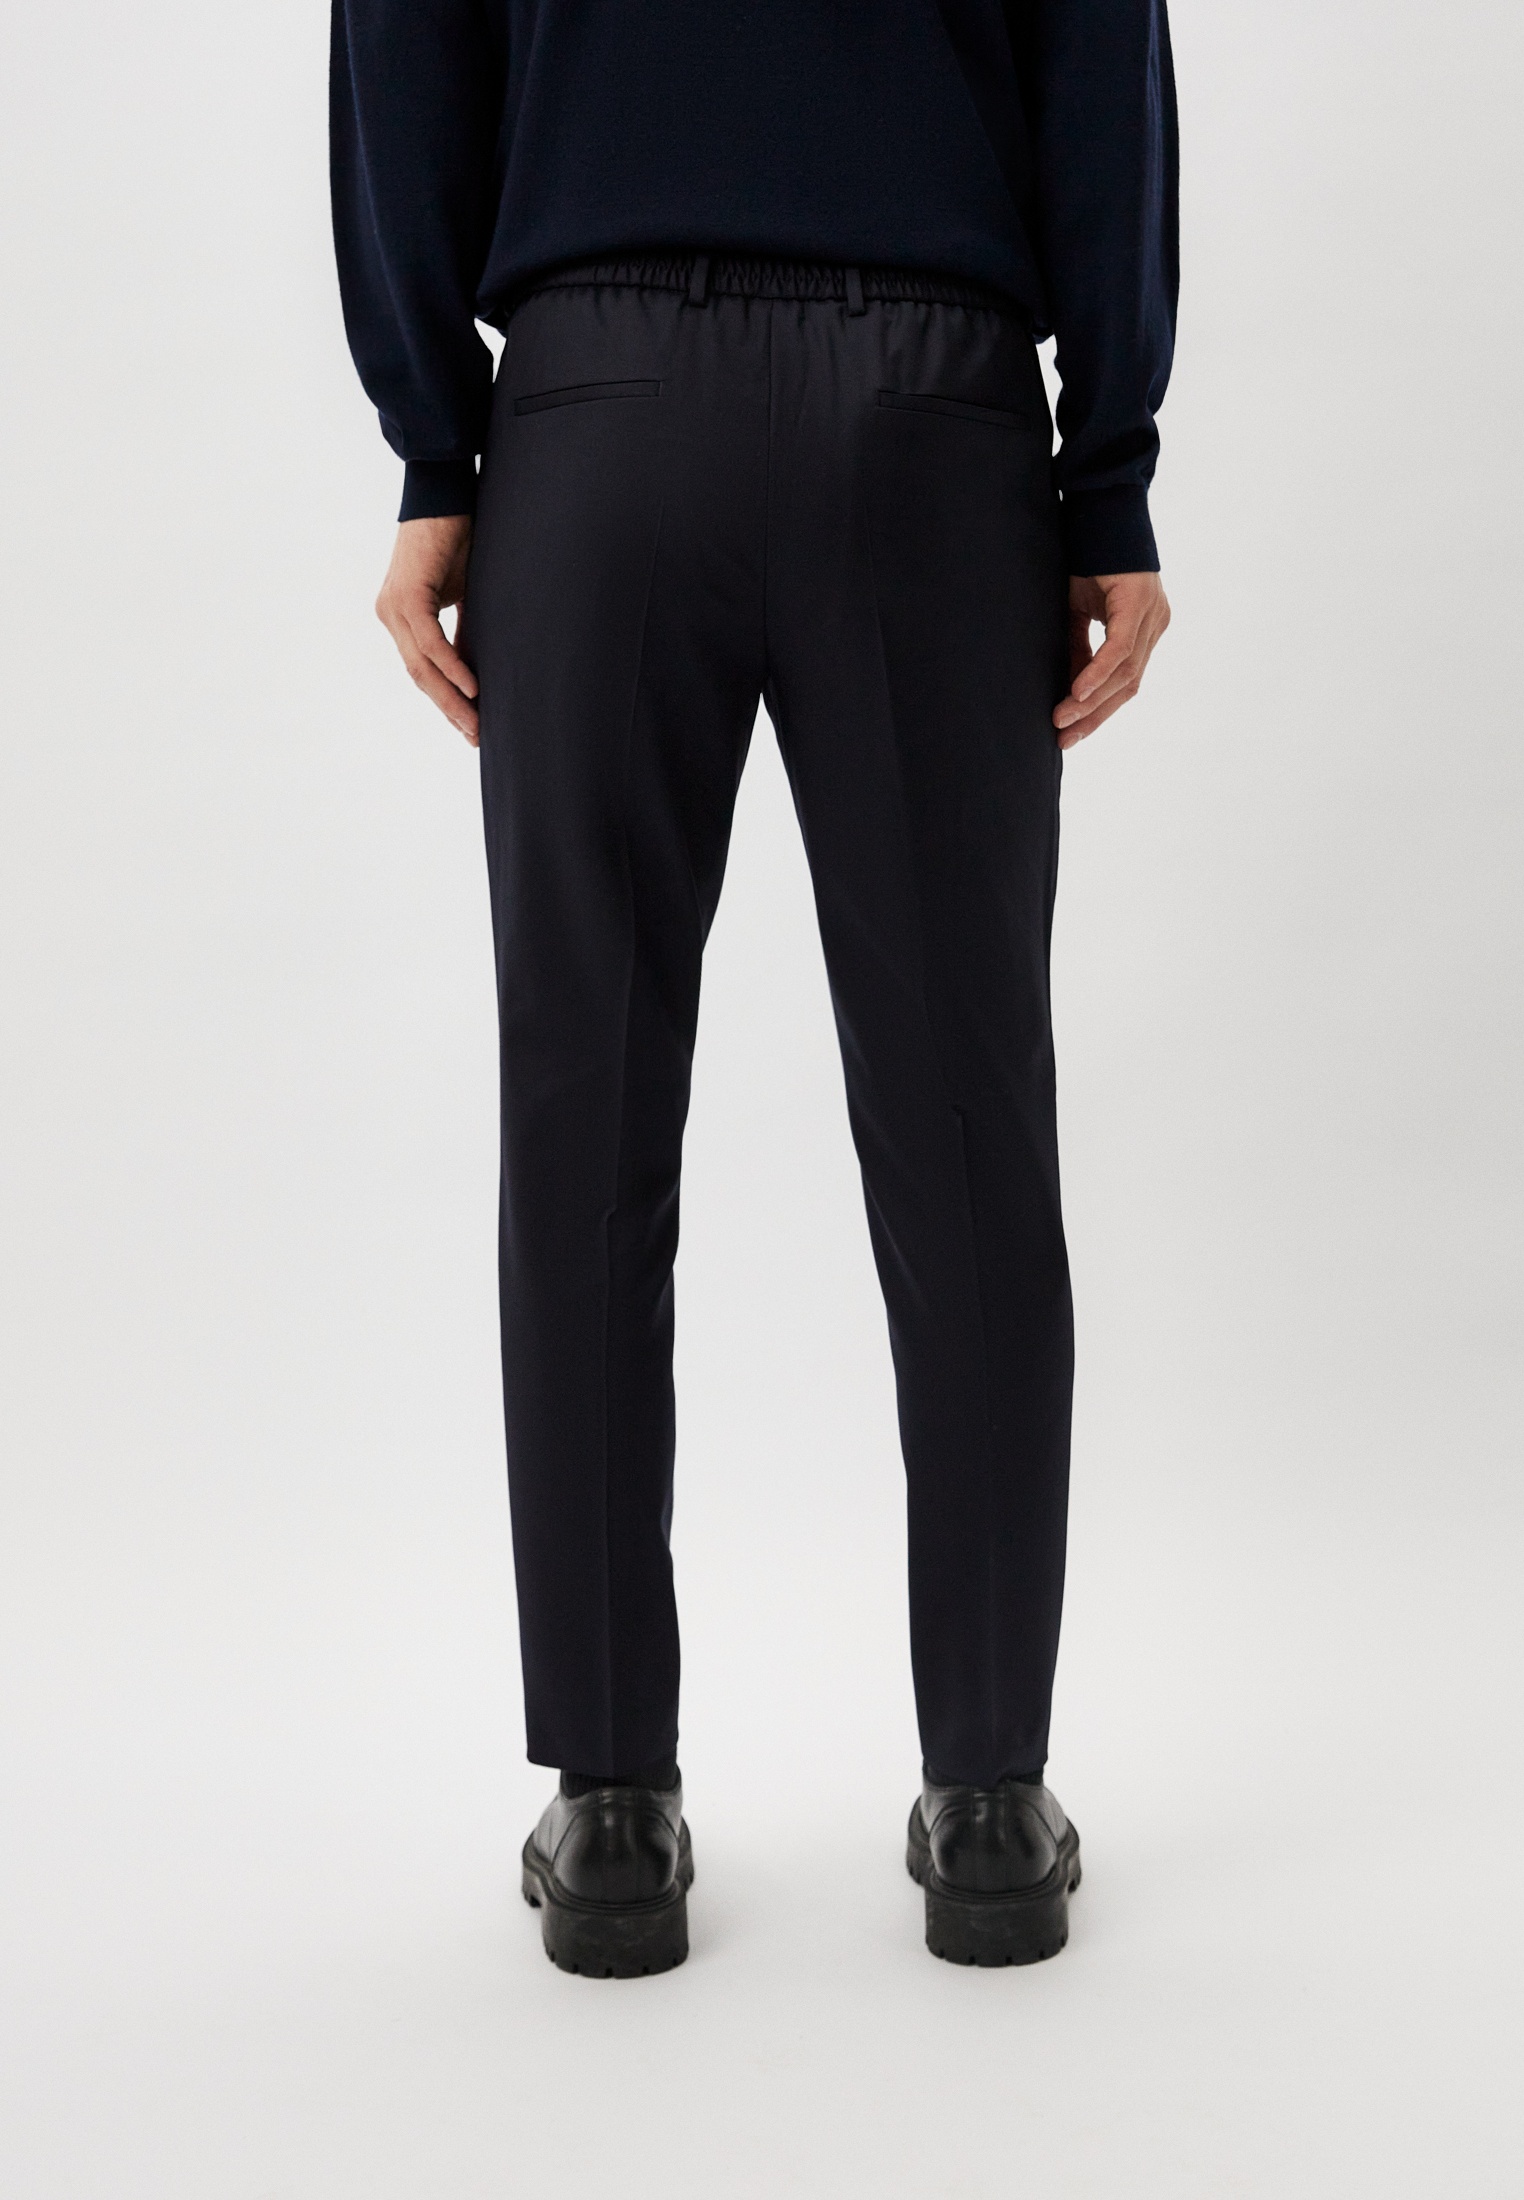 Мужские классические брюки Boss (Босс) 50469169: изображение 3